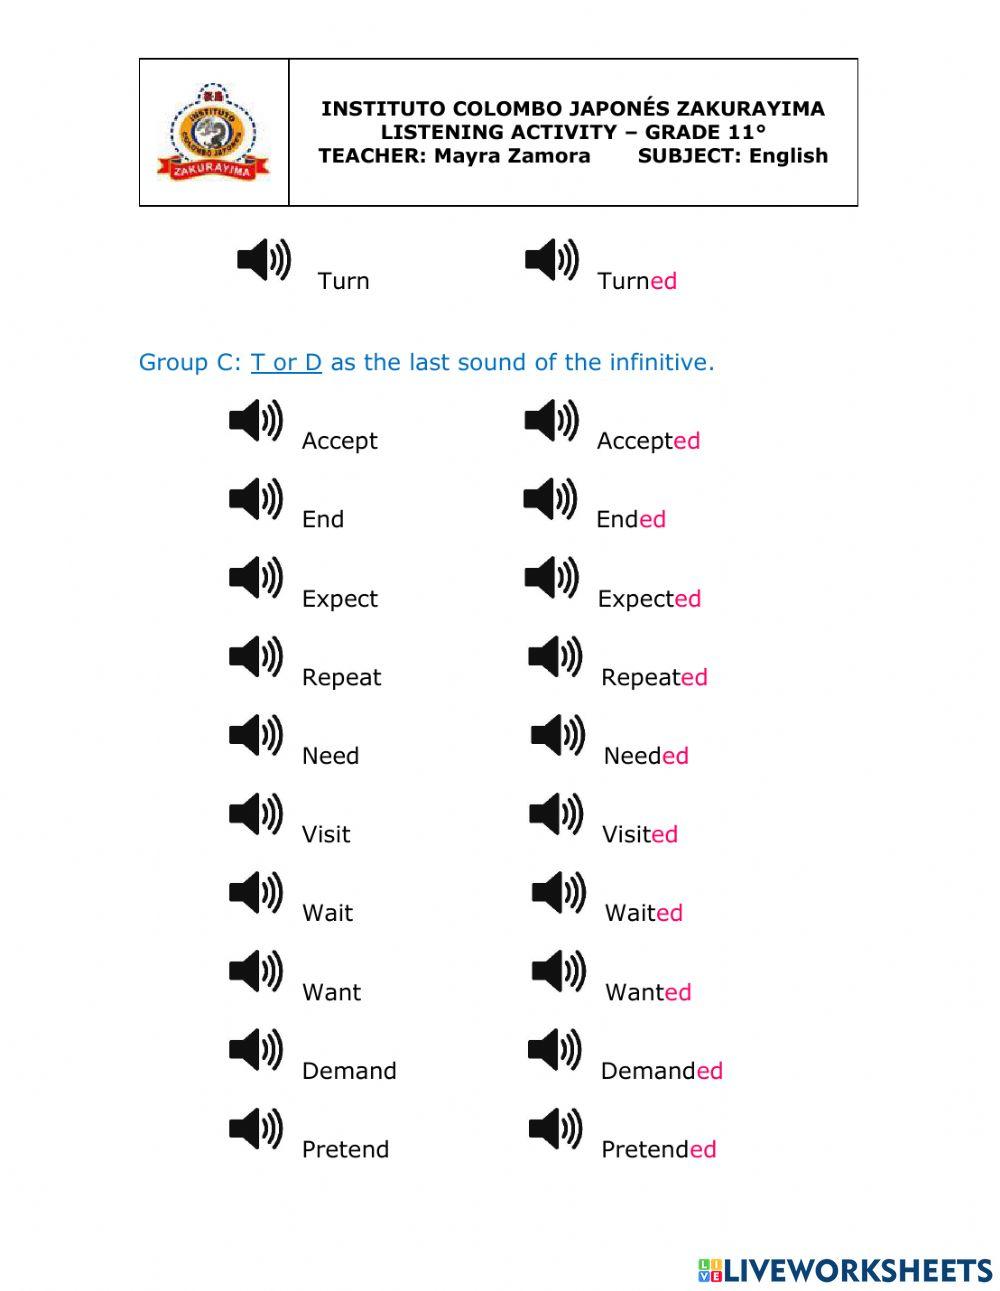 Regular Verbs Pronunciation